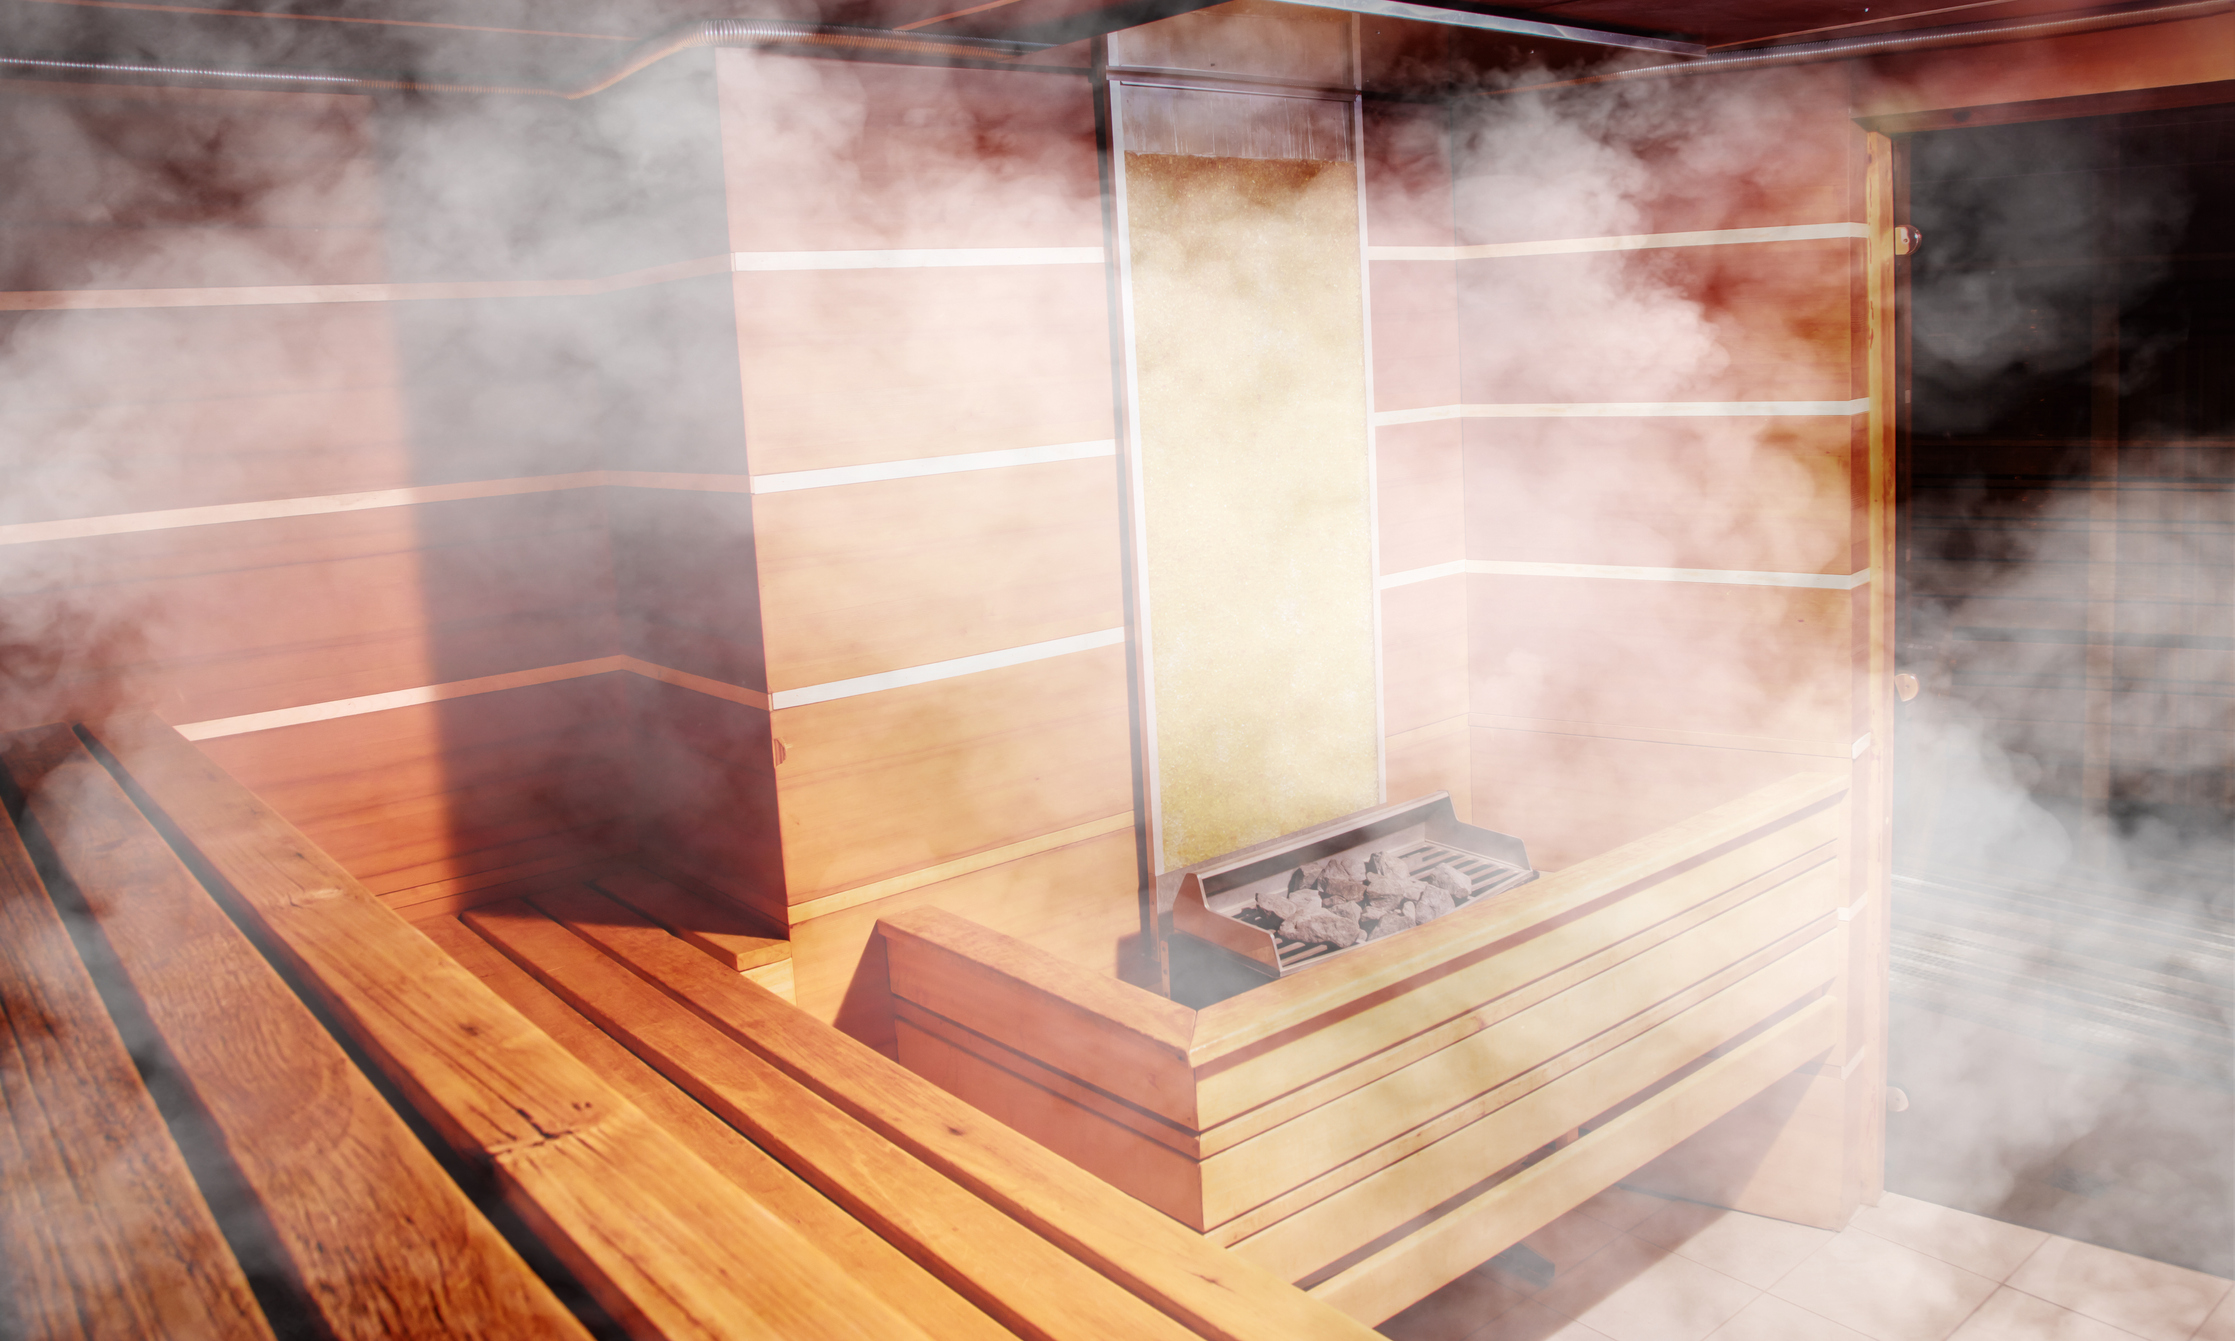 Jaką wybrać saunę – mokrą czy suchą?